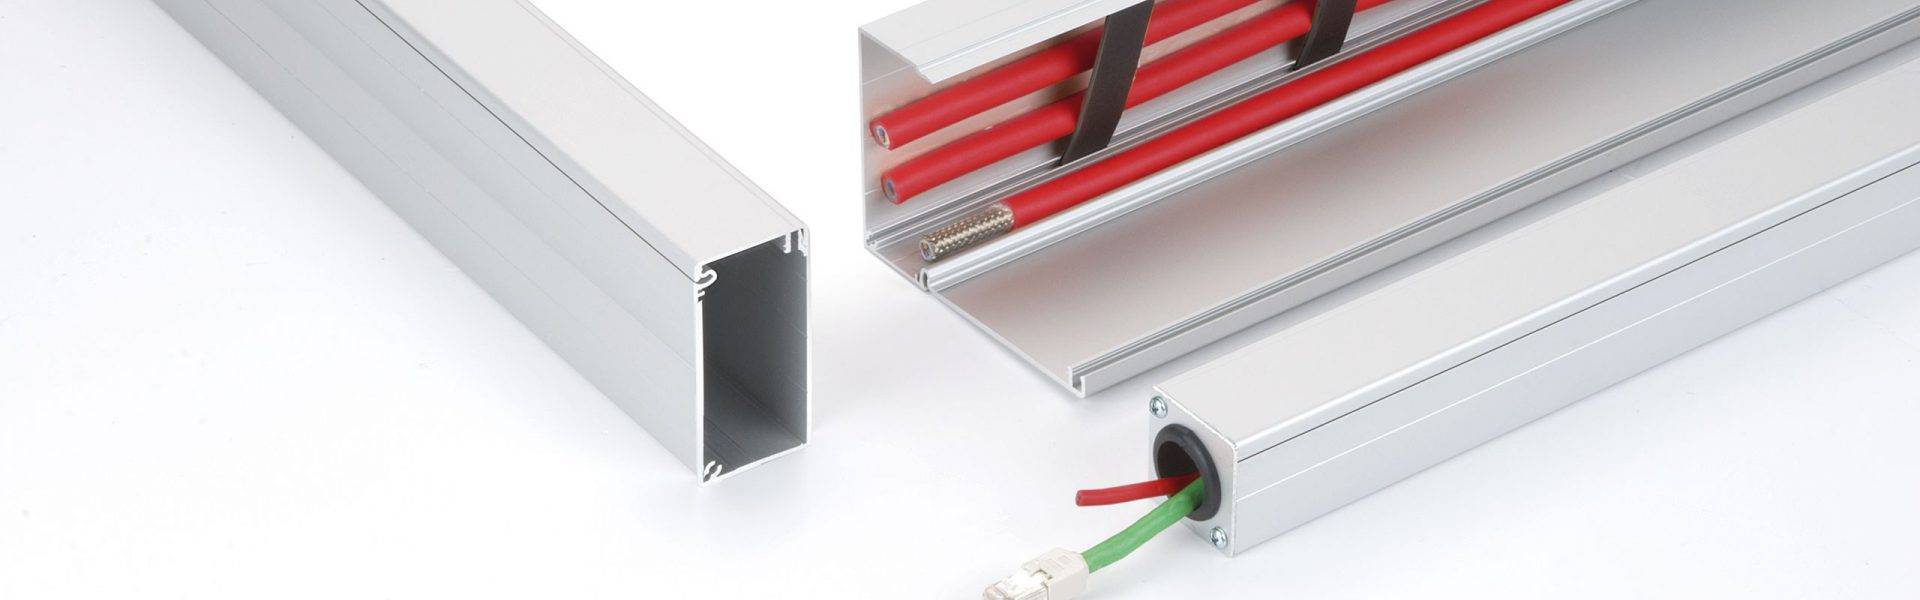 Способы прокладки электрического кабеля в помещениях:  в гофре, каналах, коробах и кембриках